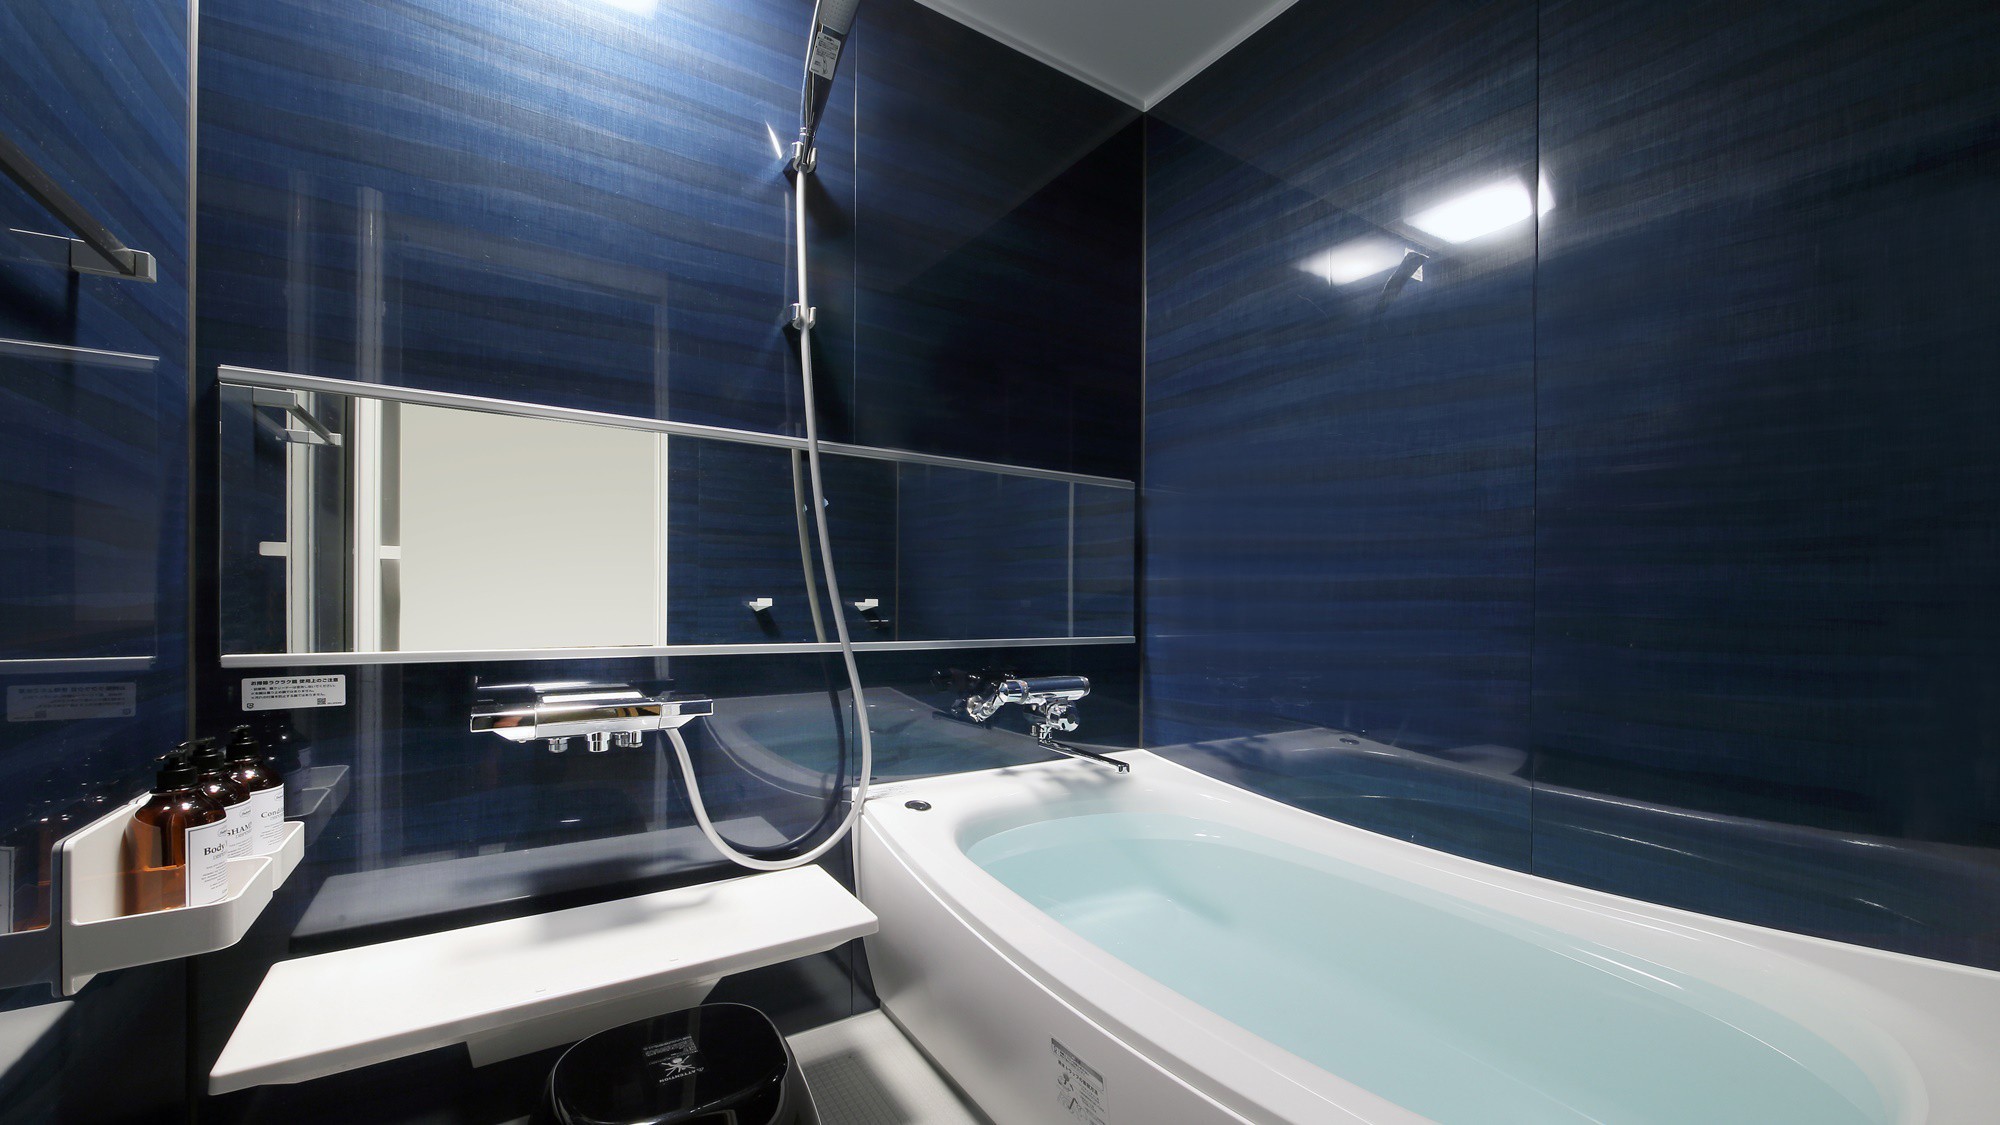 『清夏-せいか-』内風呂もお部屋のコンセプトに合わせた色で作られています